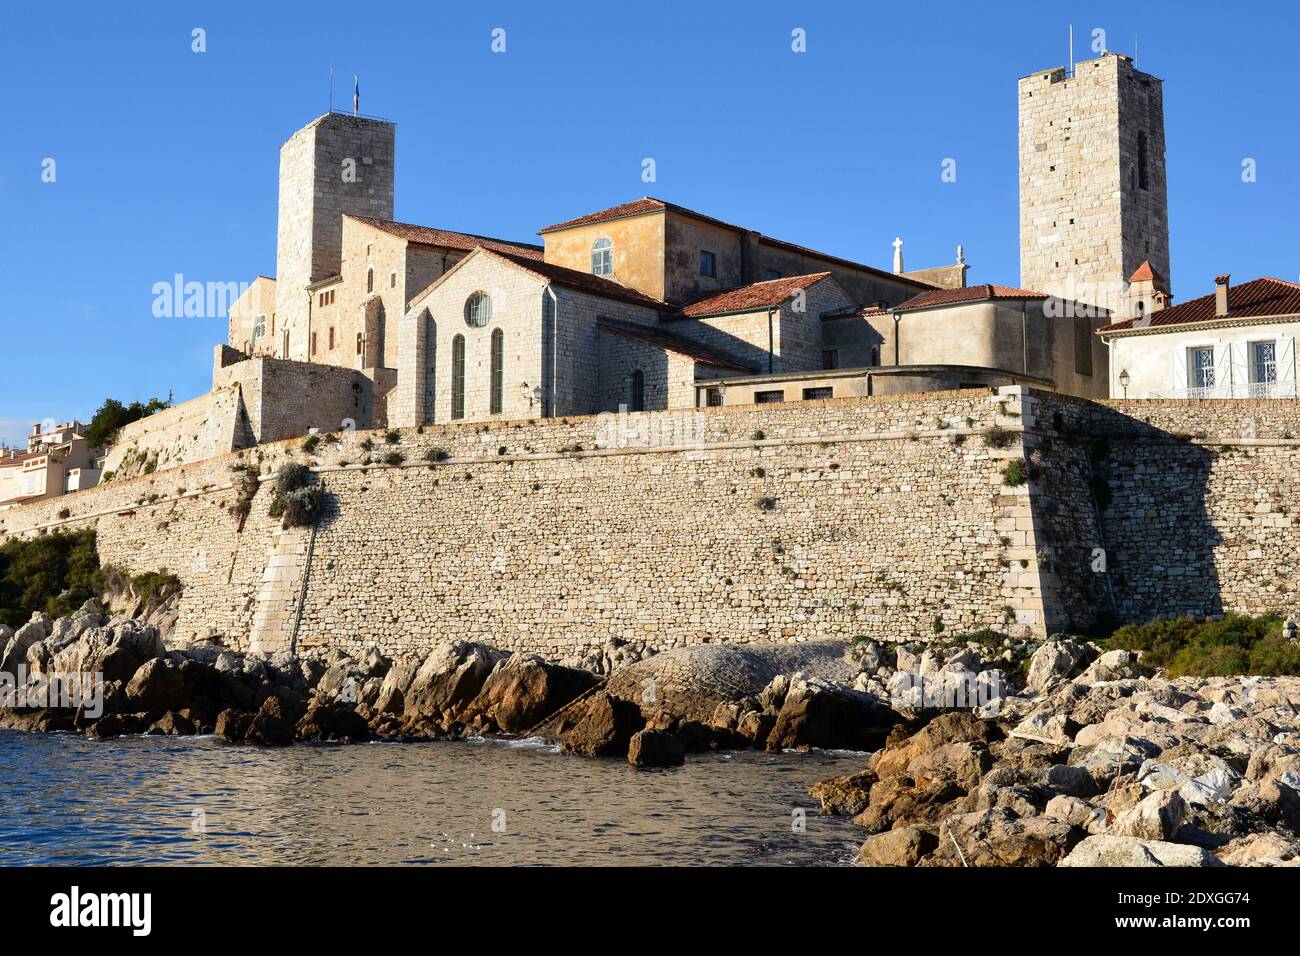 France, côte d'azur, la vieille ville d'Antibes est entourée de remparts, le château Grimaldi abrite un musée dédié à un peintre surréaliste célèbre. Banque D'Images